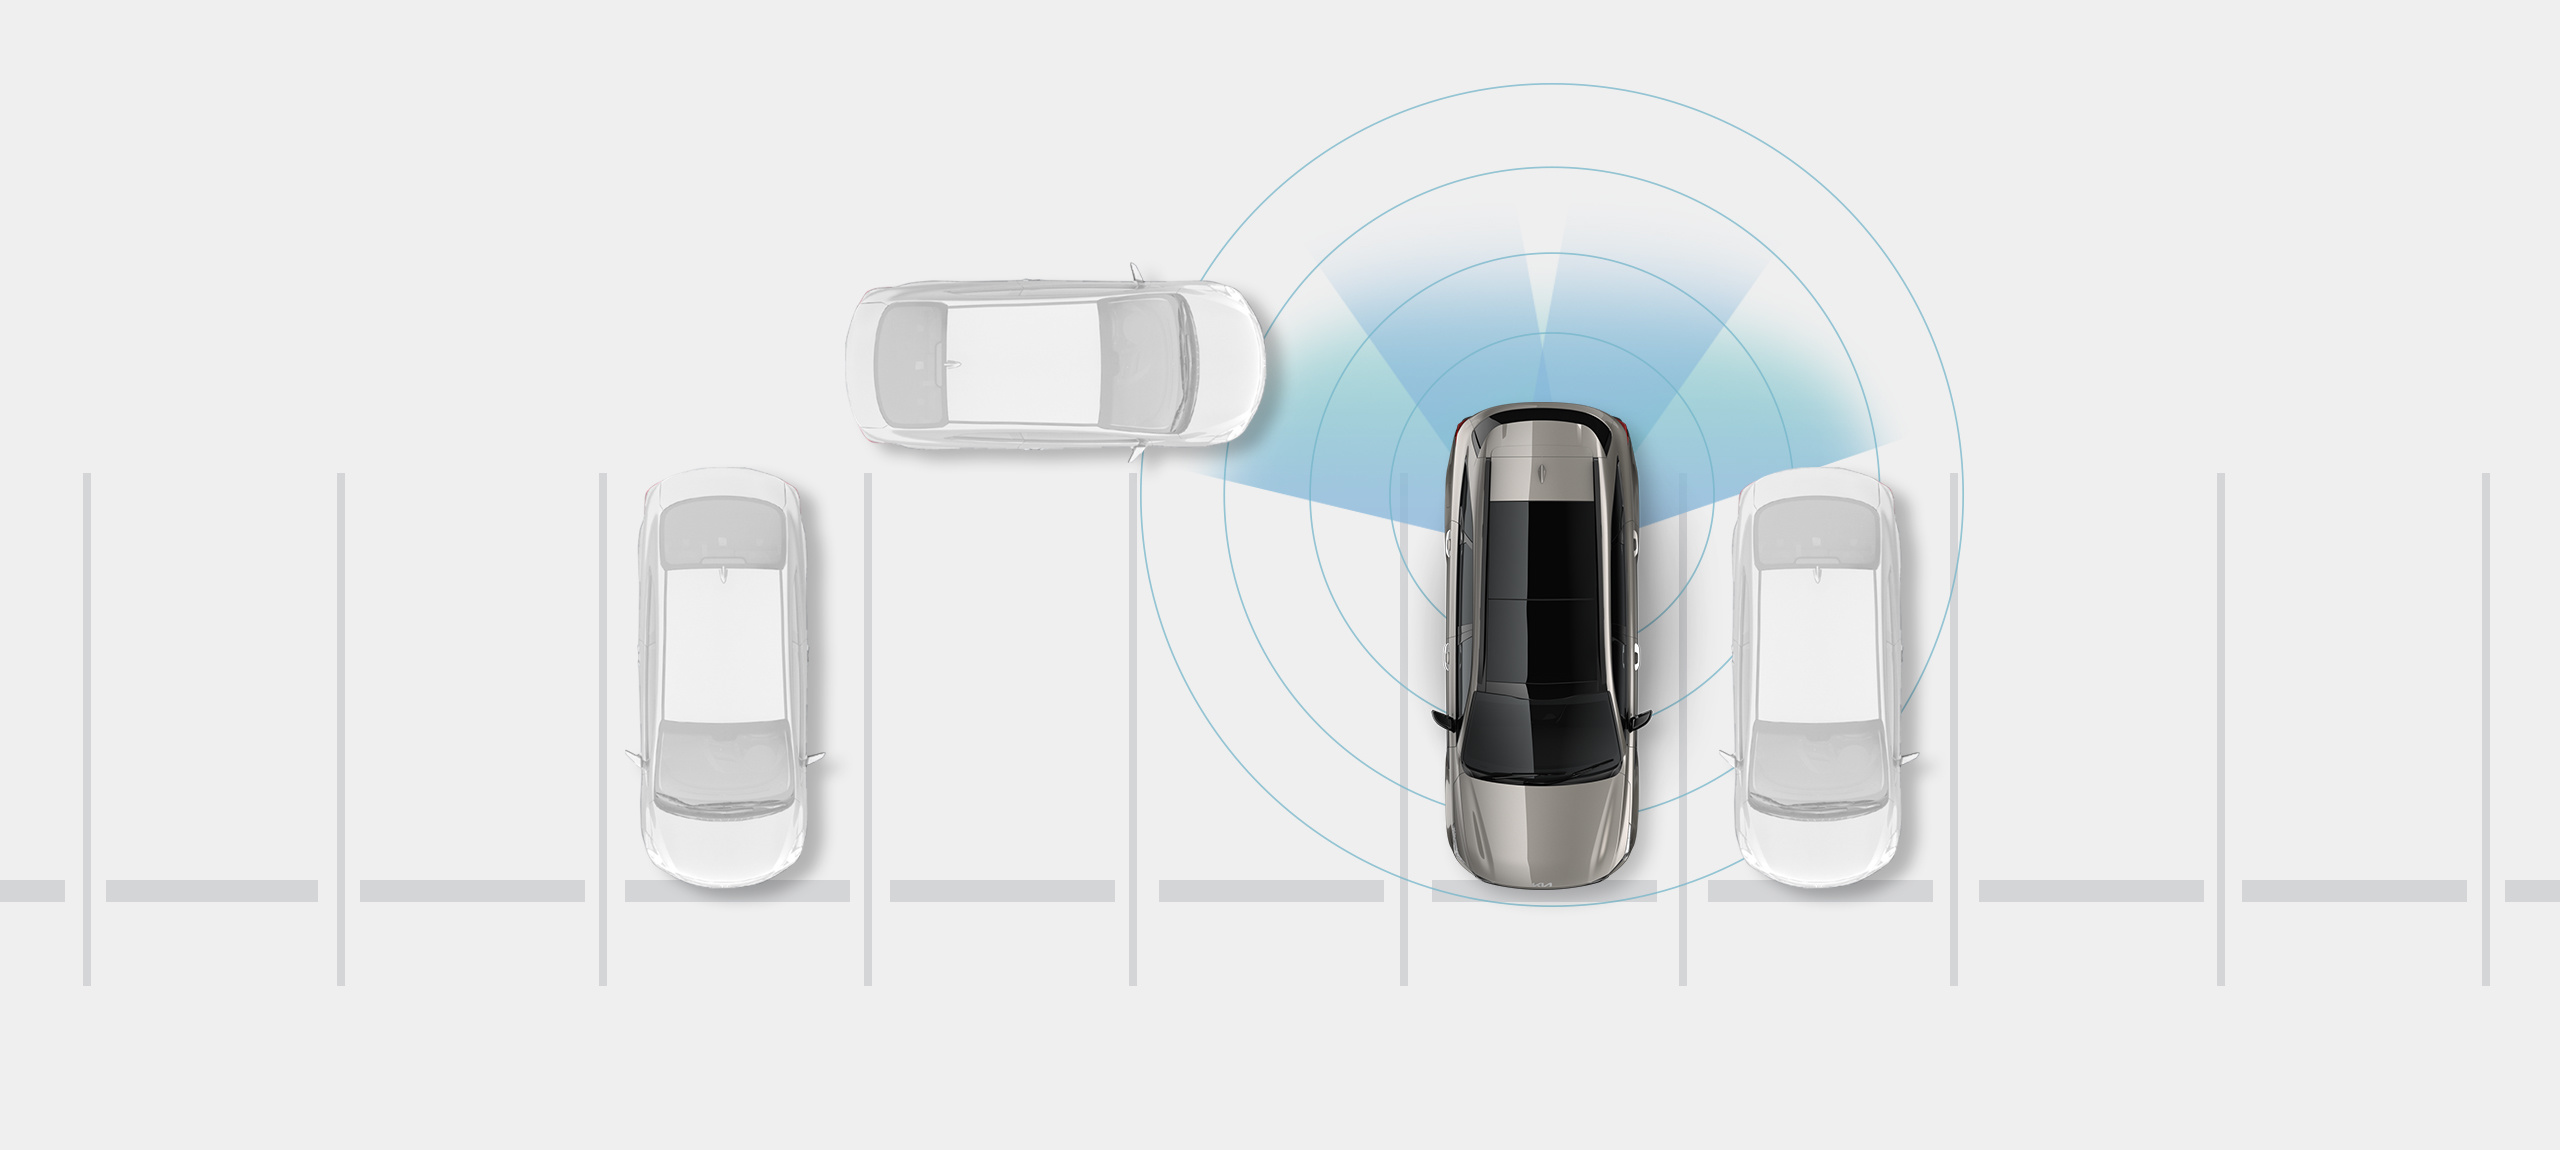 Vehículo Kia estacionado en un espacio con anillos a su alrededor para mostrar que el automóvil detecta posibles peligros y una sección resaltada para demostrar que detecta un vehículo que se aproxima detrás de él